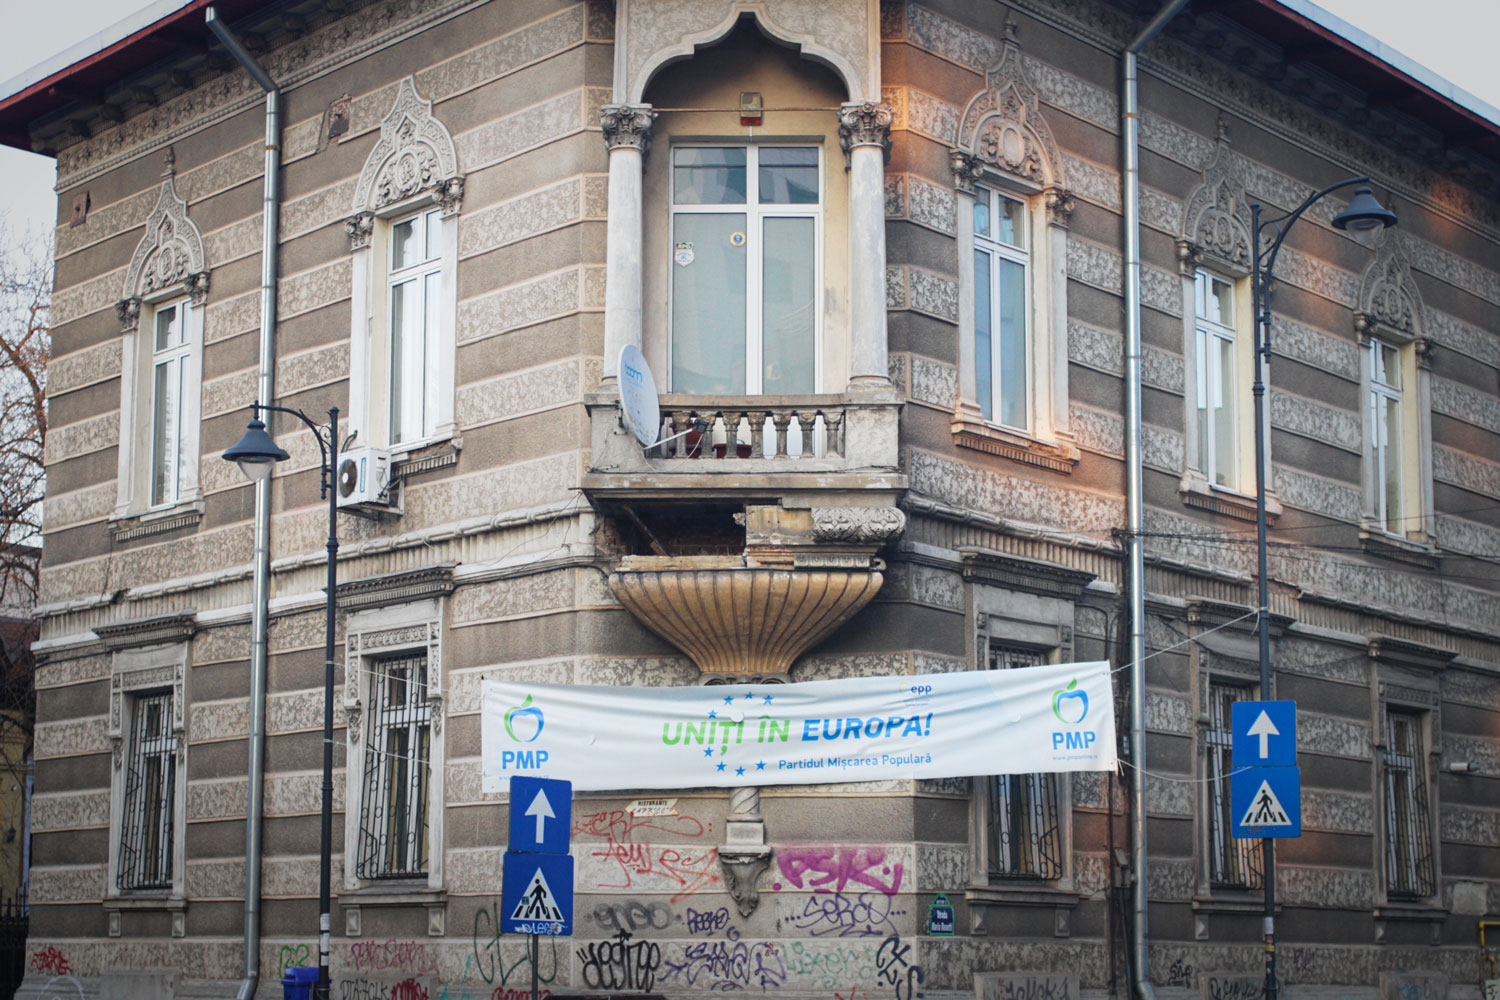 Maris 2019, les banderoles et affiches électorales fleurissent dans la capitale roumaine. Ici, une banderole : « Unis en Europe ».